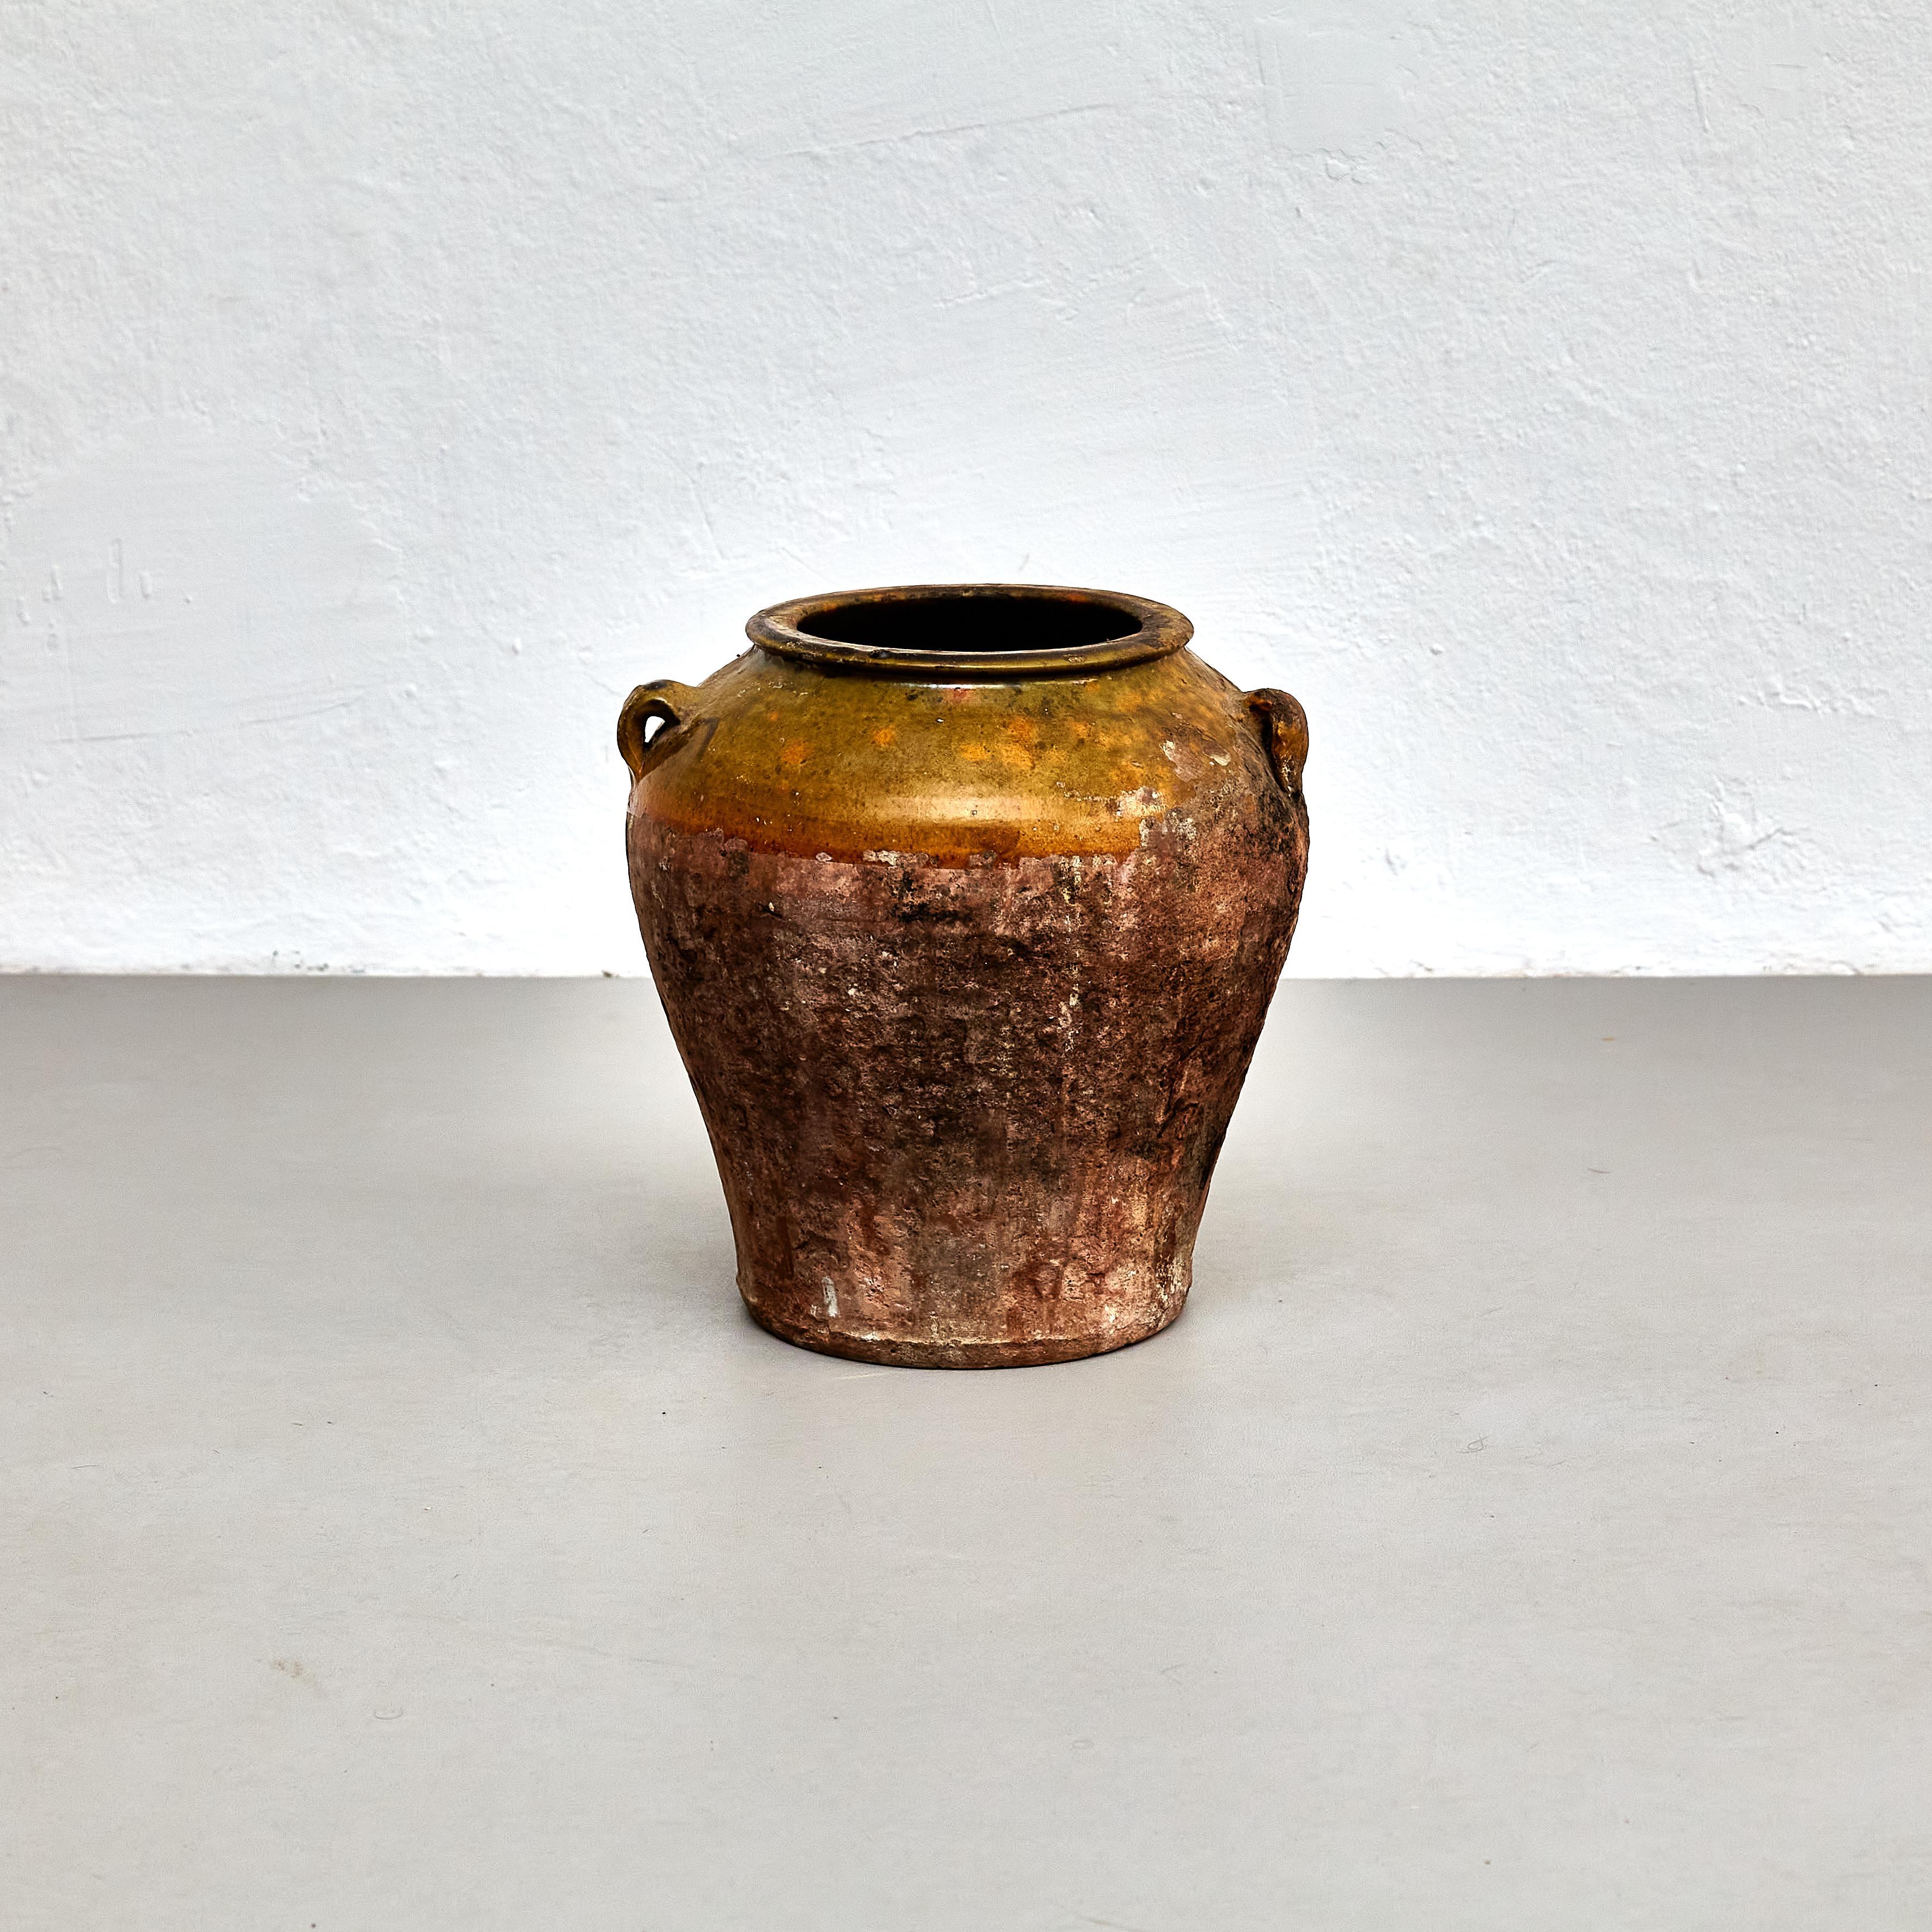 Vase en céramique traditionnelle espagnole du début du 20e siècle.

Fabriqué en Espagne, début du 20e siècle.

En état d'origine avec une usure mineure conforme à l'âge et à l'utilisation, préservant une belle patine.

Matériaux :